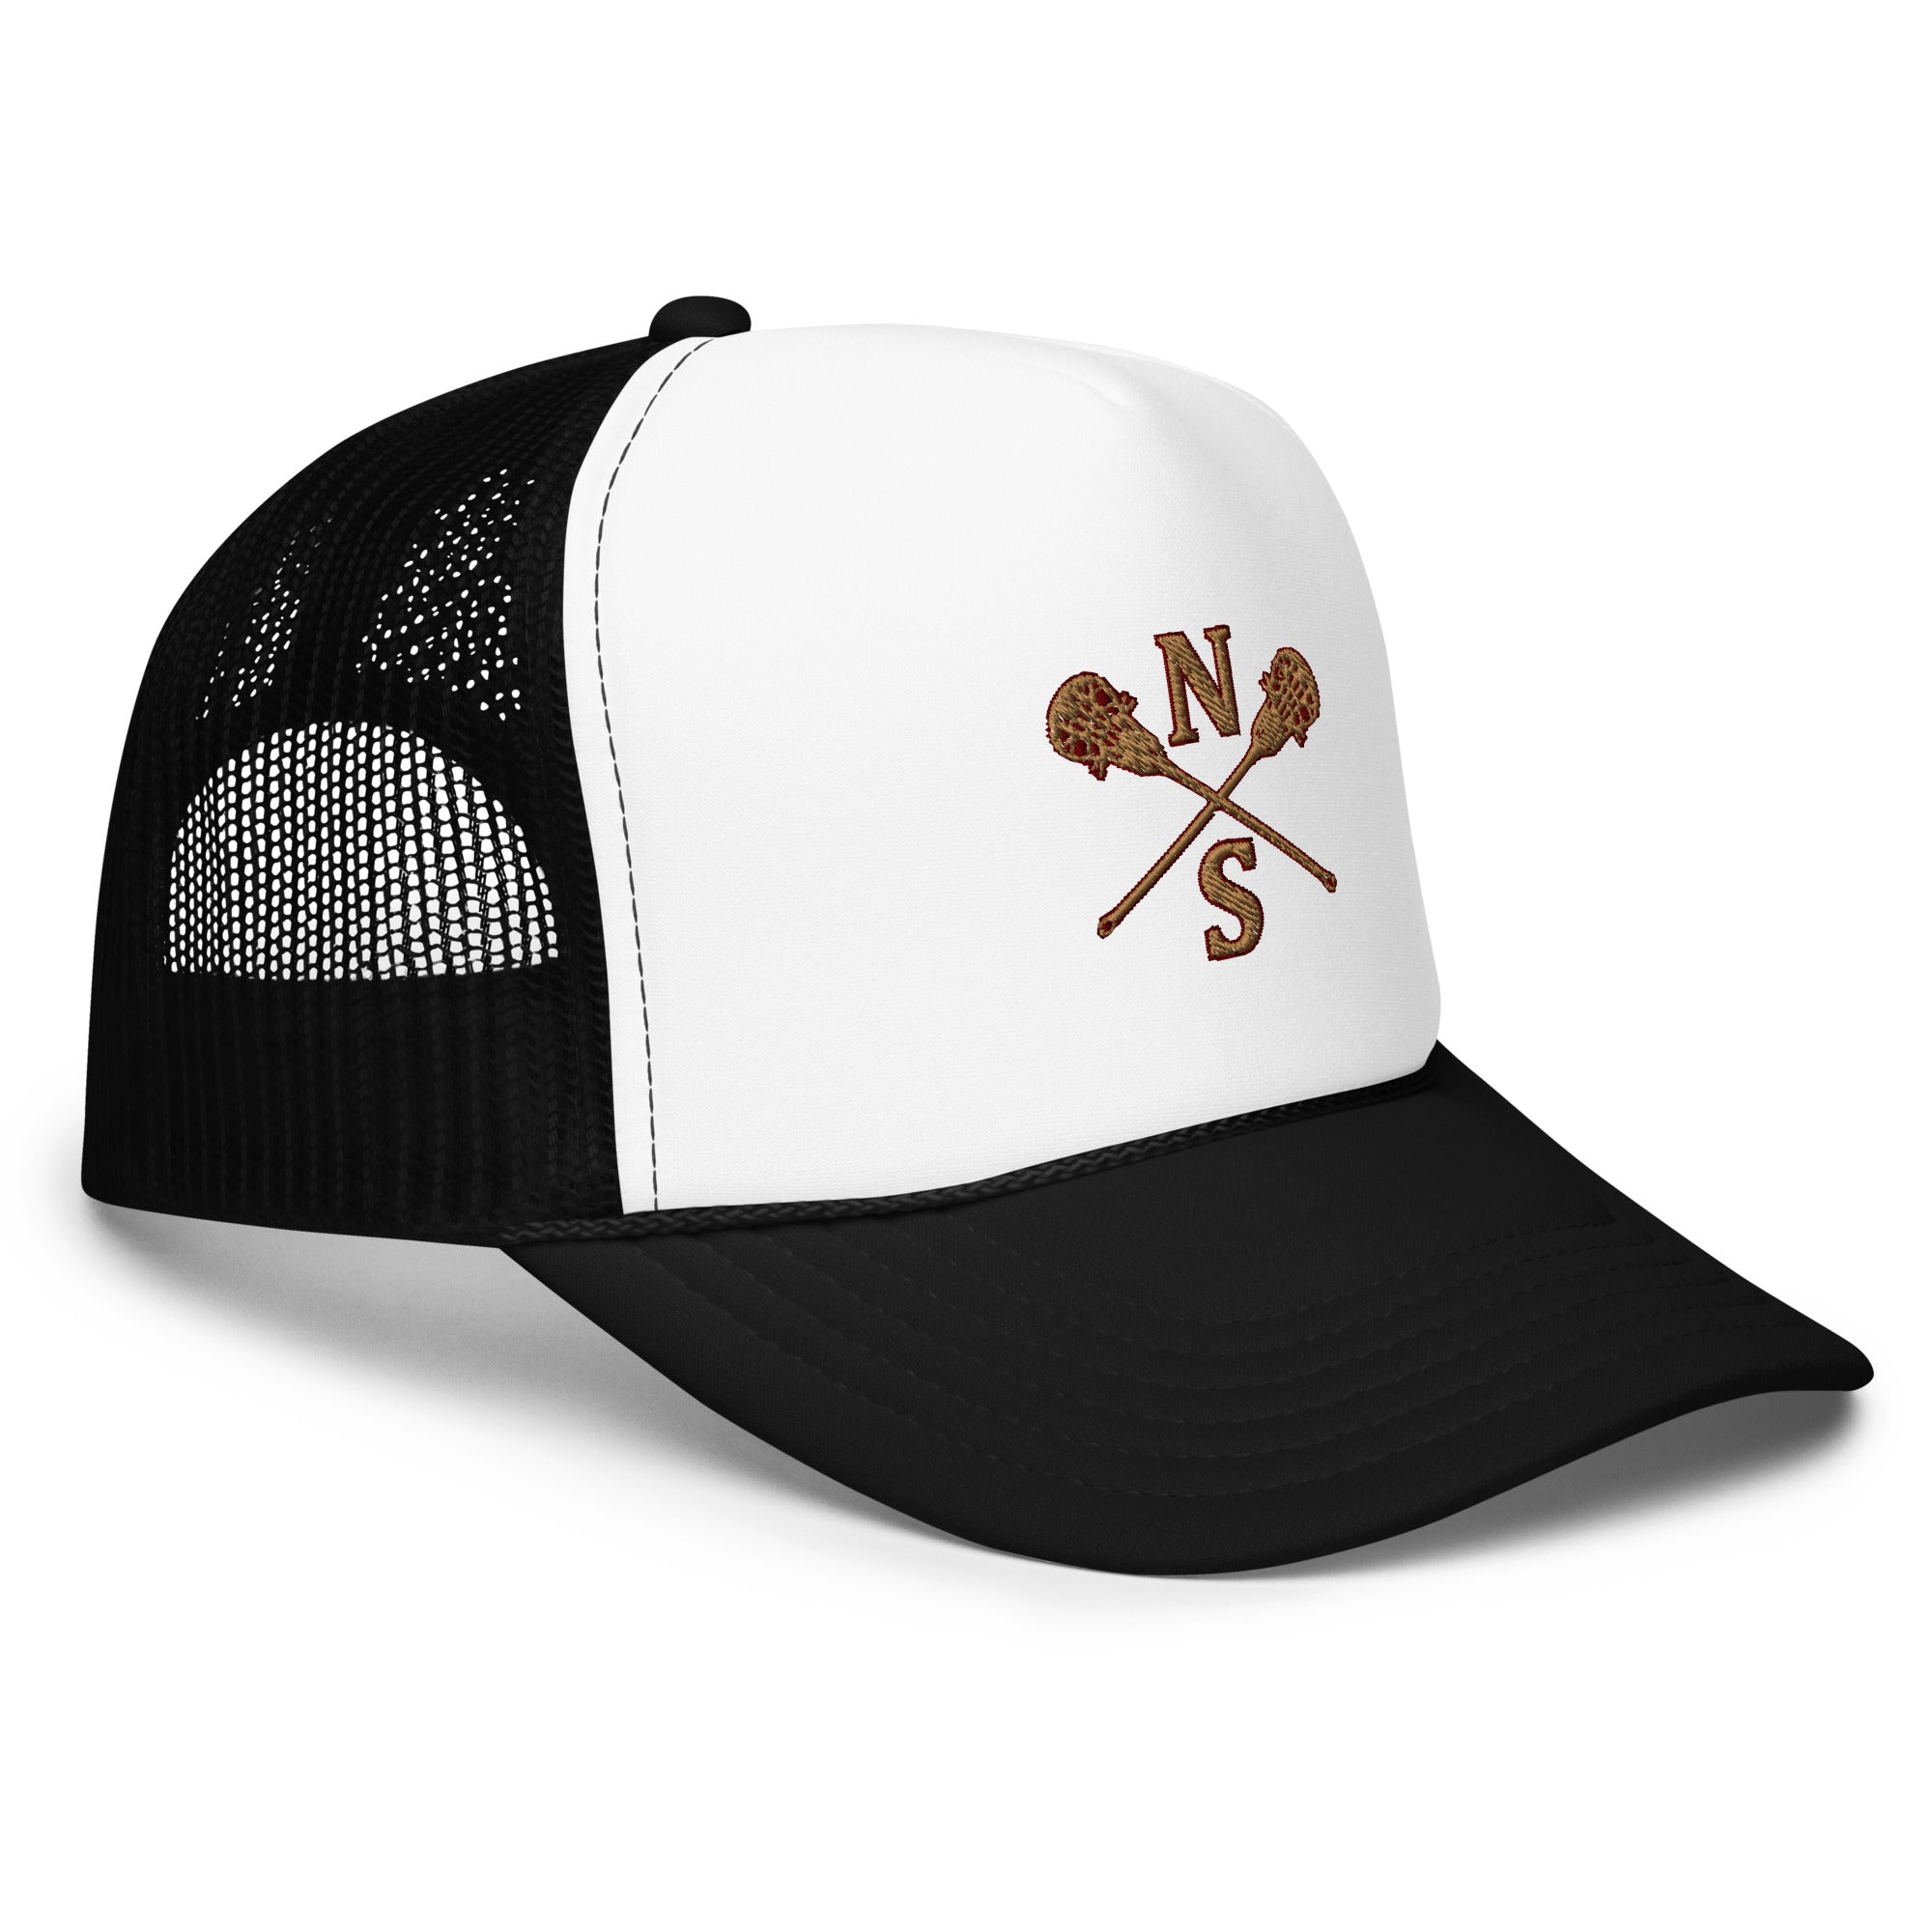 N-S Foam trucker hat (Girls Logo)